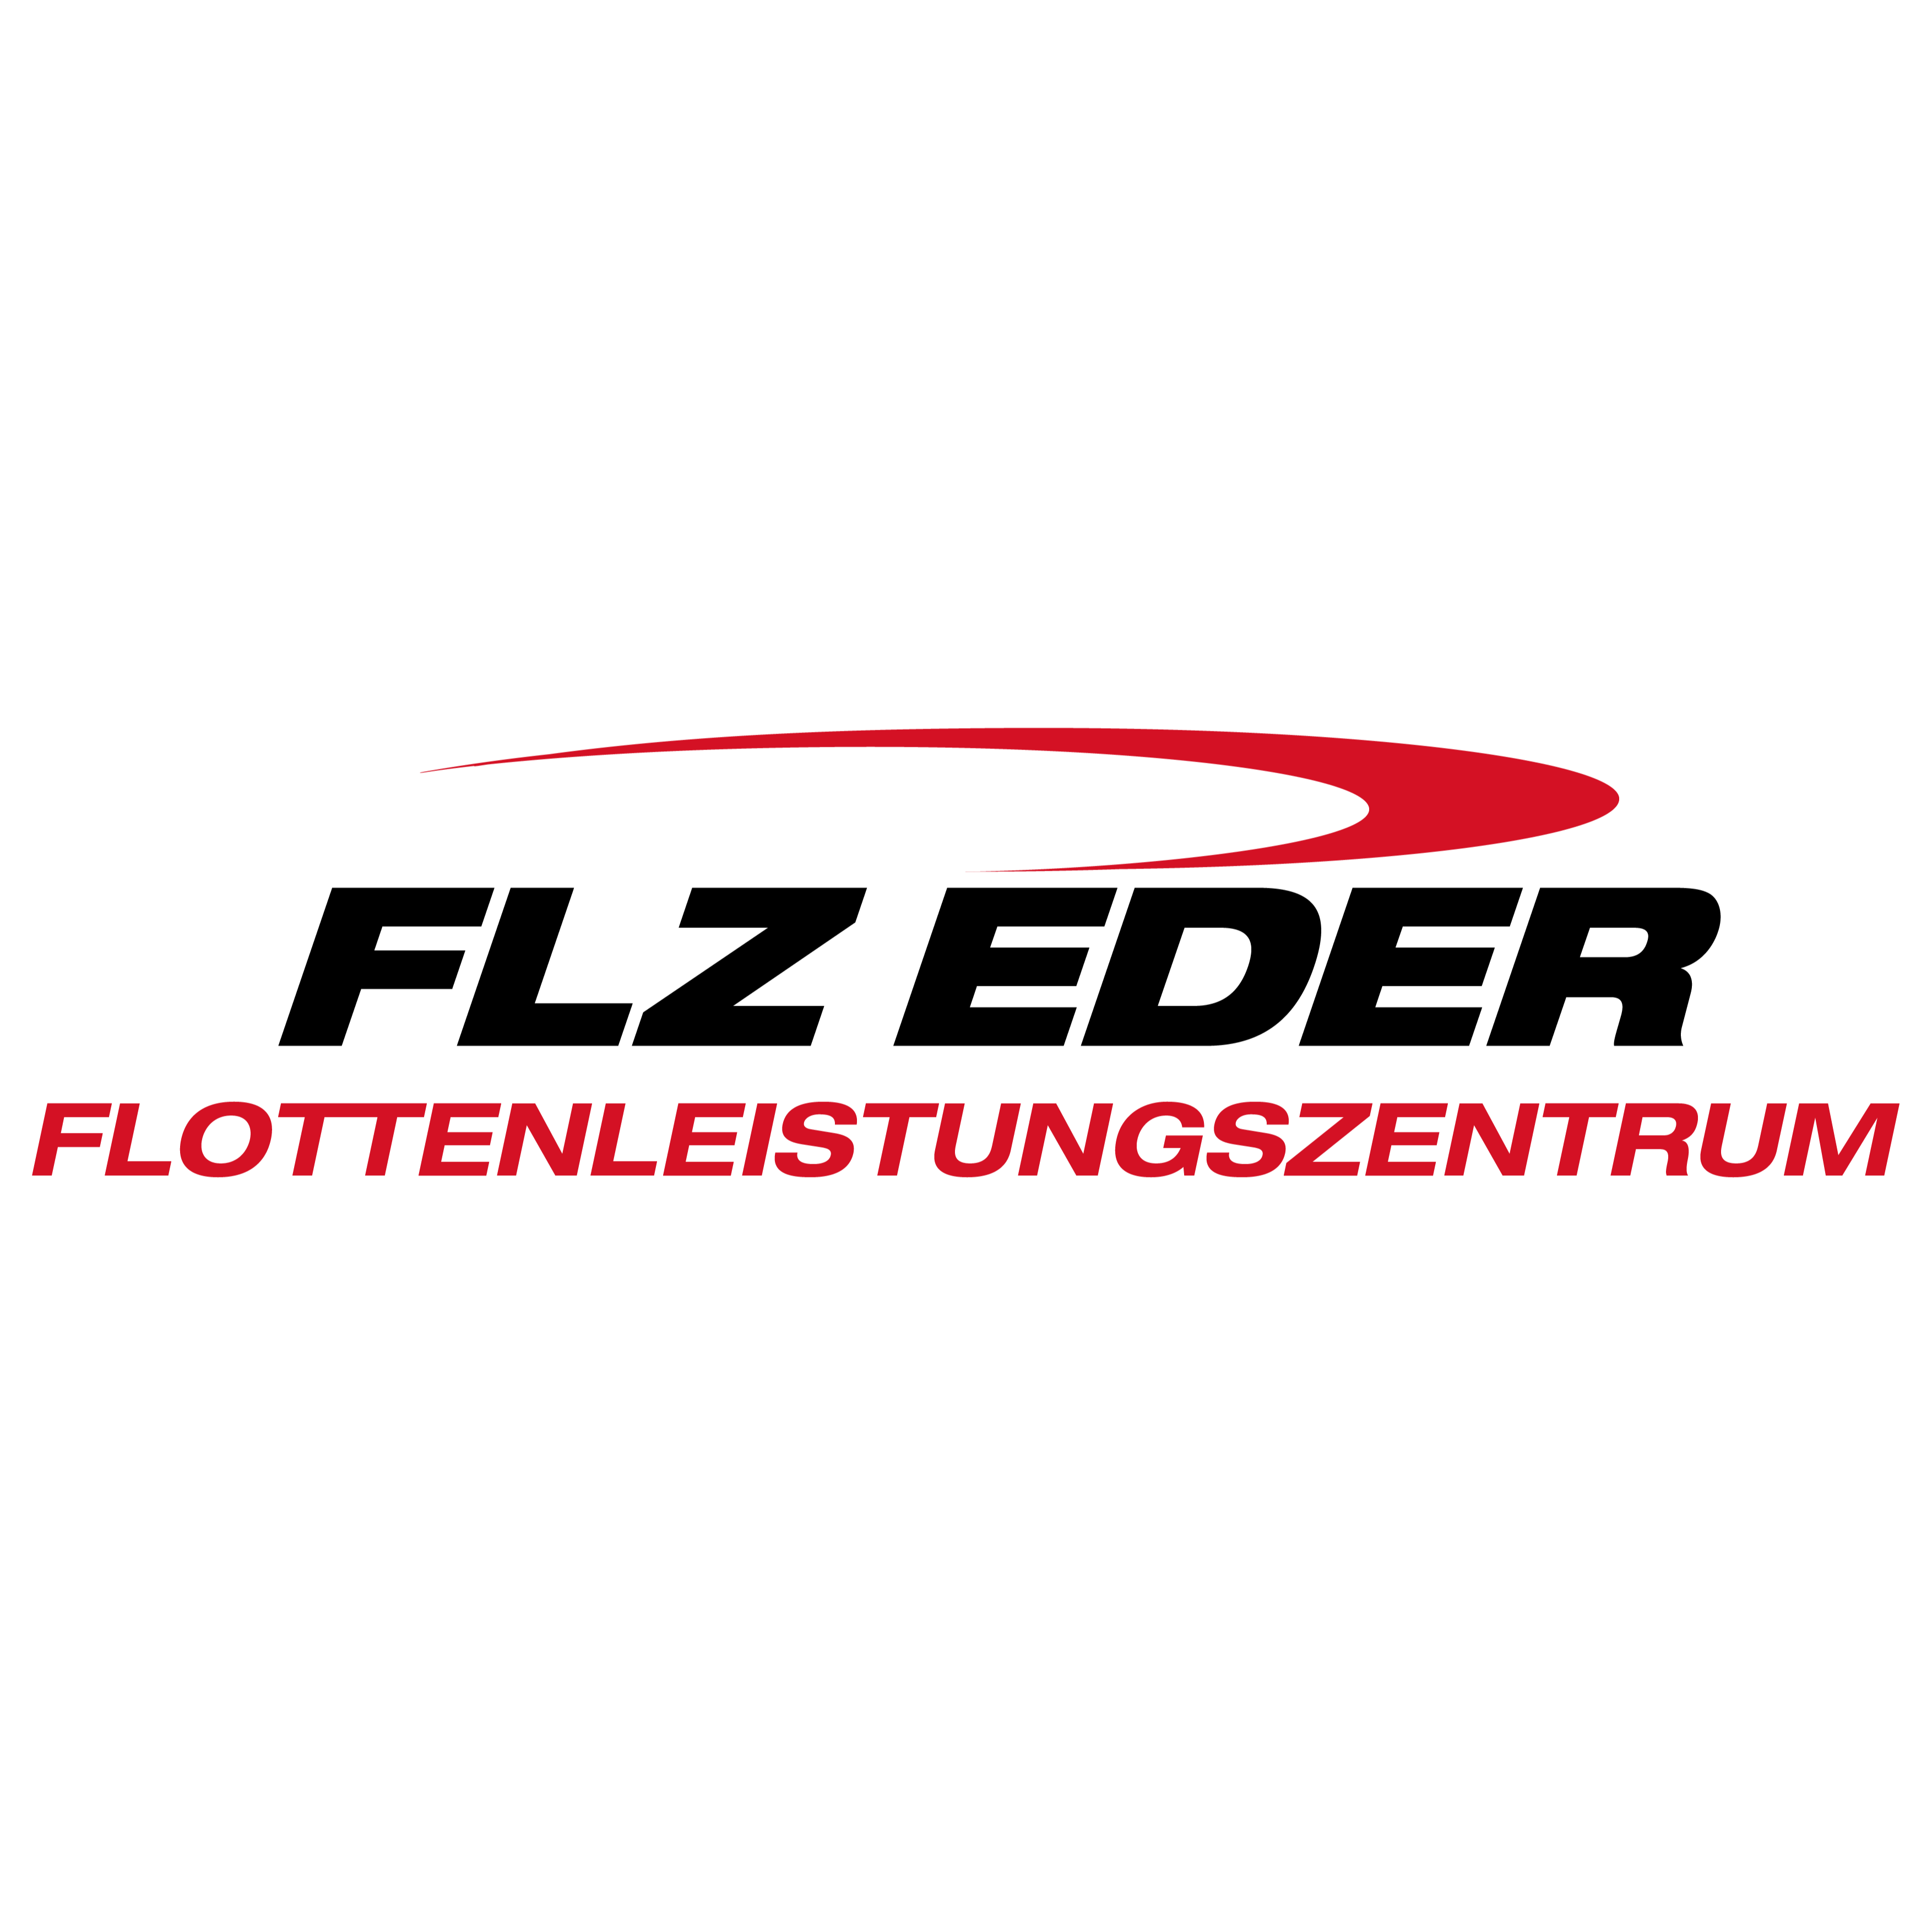 Flottenleistungszentrum Eder GmbH in Kolbermoor - Logo